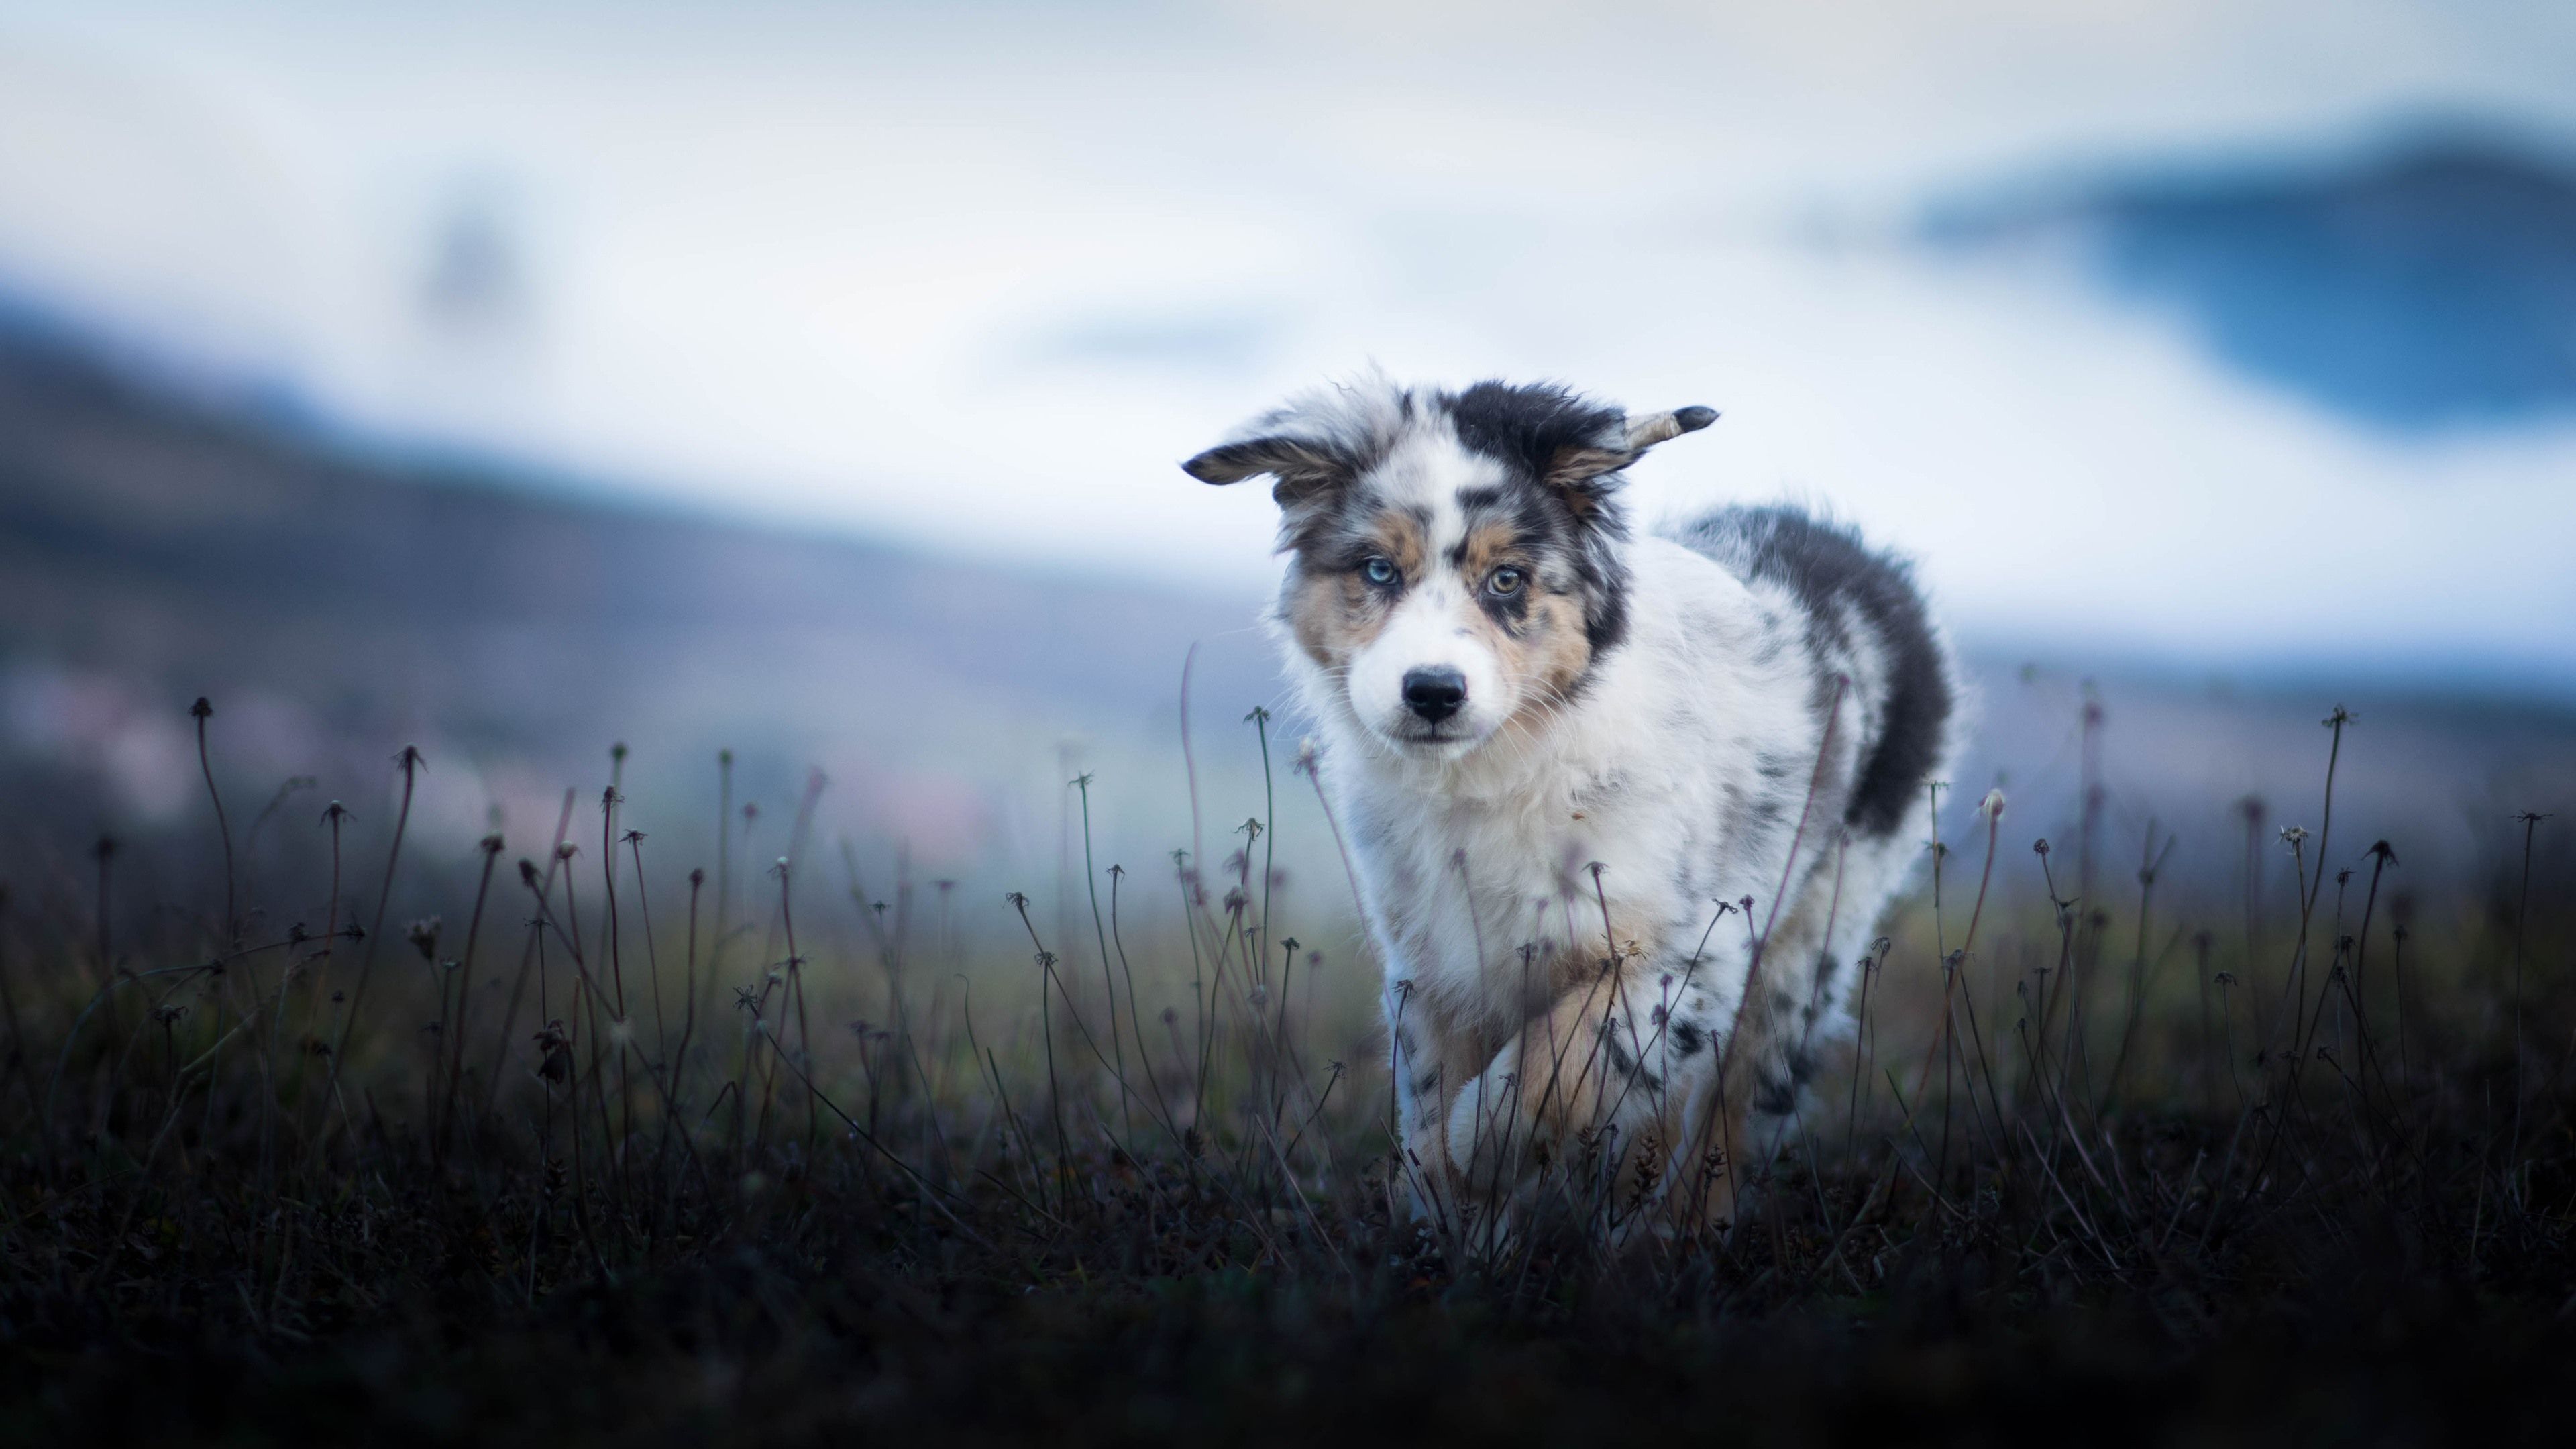 Wallpaper Australian shepherd, furry puppy, grass 3840x2160 UHD 4K